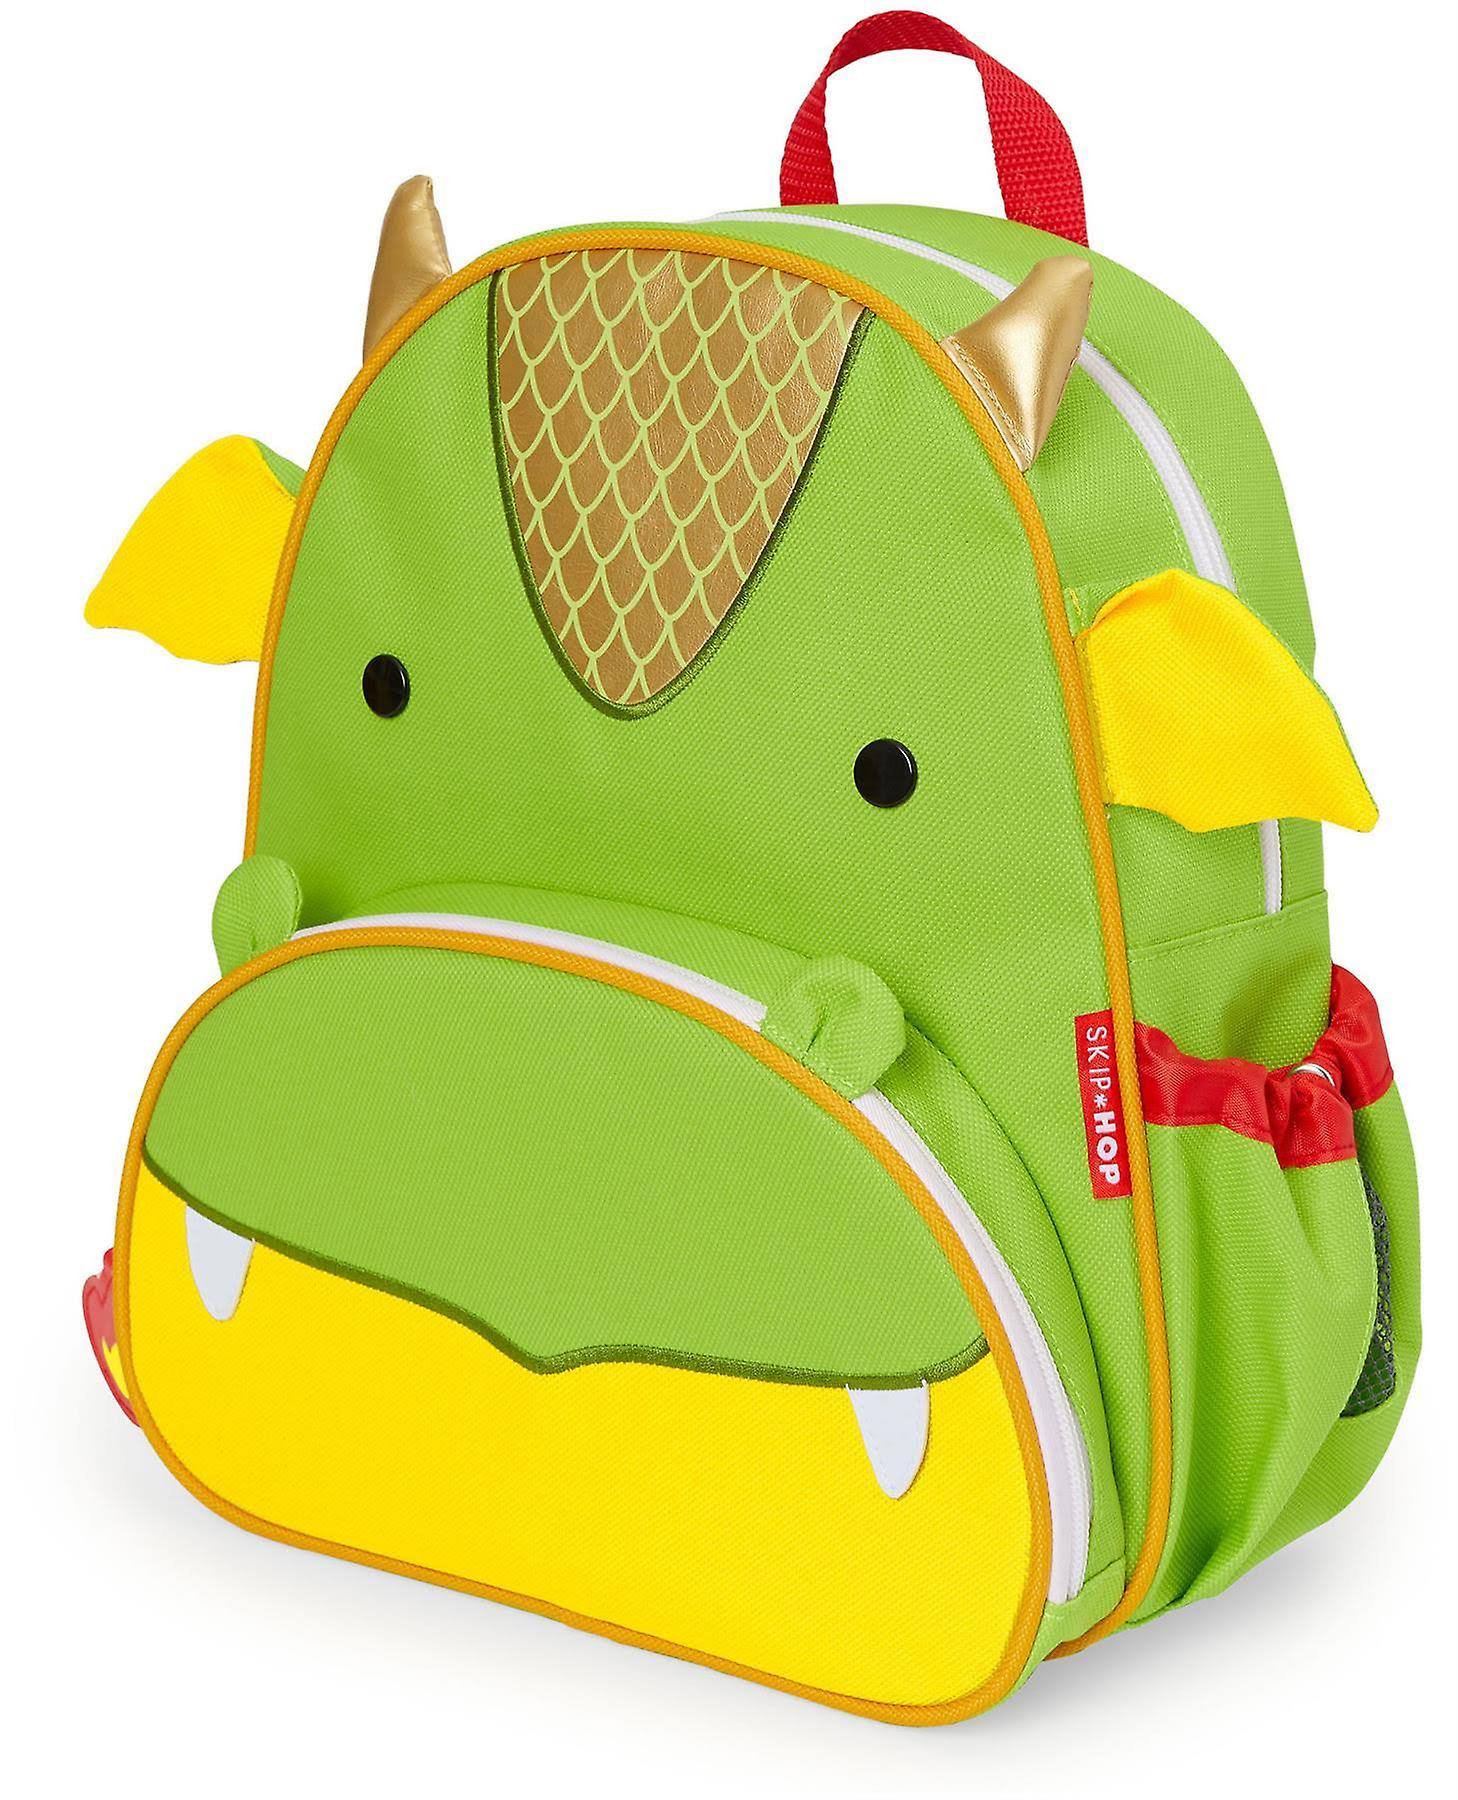 Skip Hop - Zoo Little Kid Backpack - Dragon